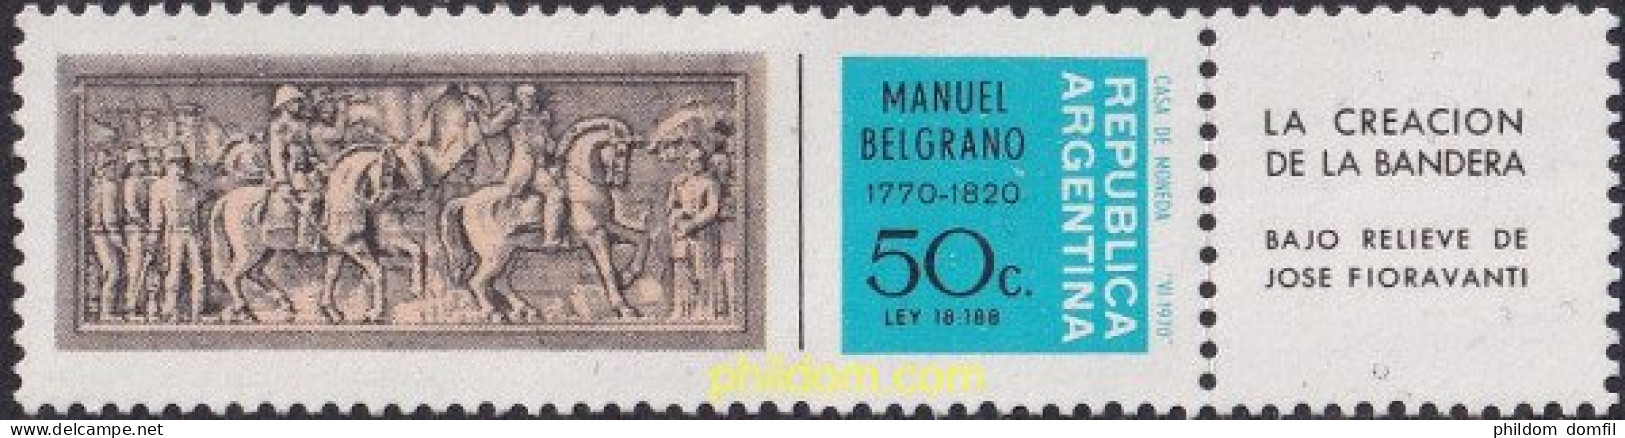 727250 HINGED ARGENTINA 1970 200 ANIVERSARIO DEL GENERAL MANUEL BELGRANO - Unused Stamps